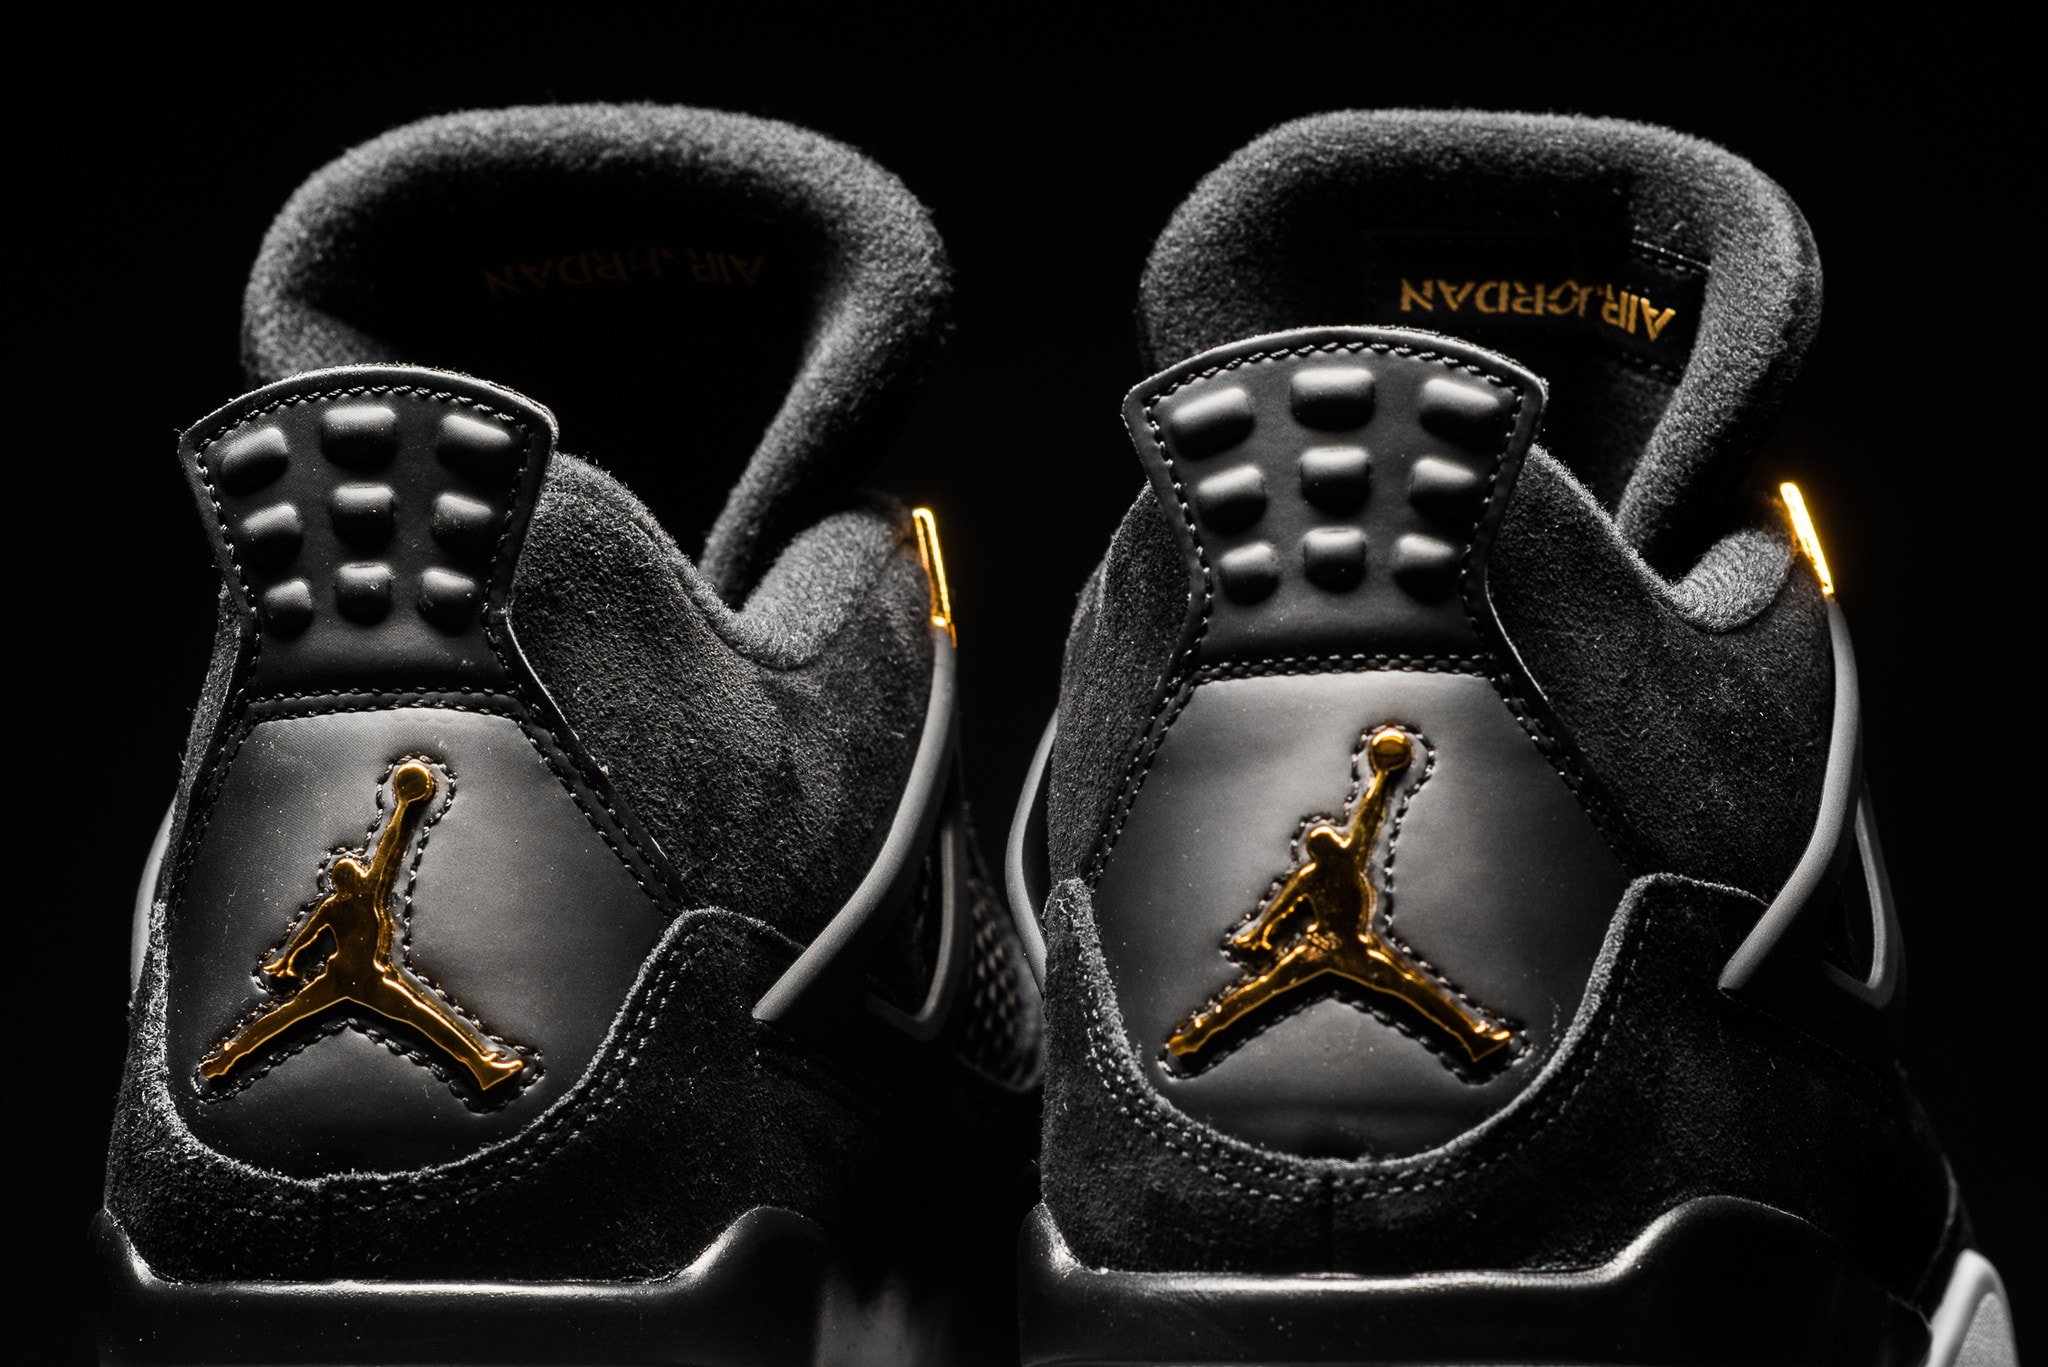 Air Jordan 4 Retro "Royalty" Closer Look